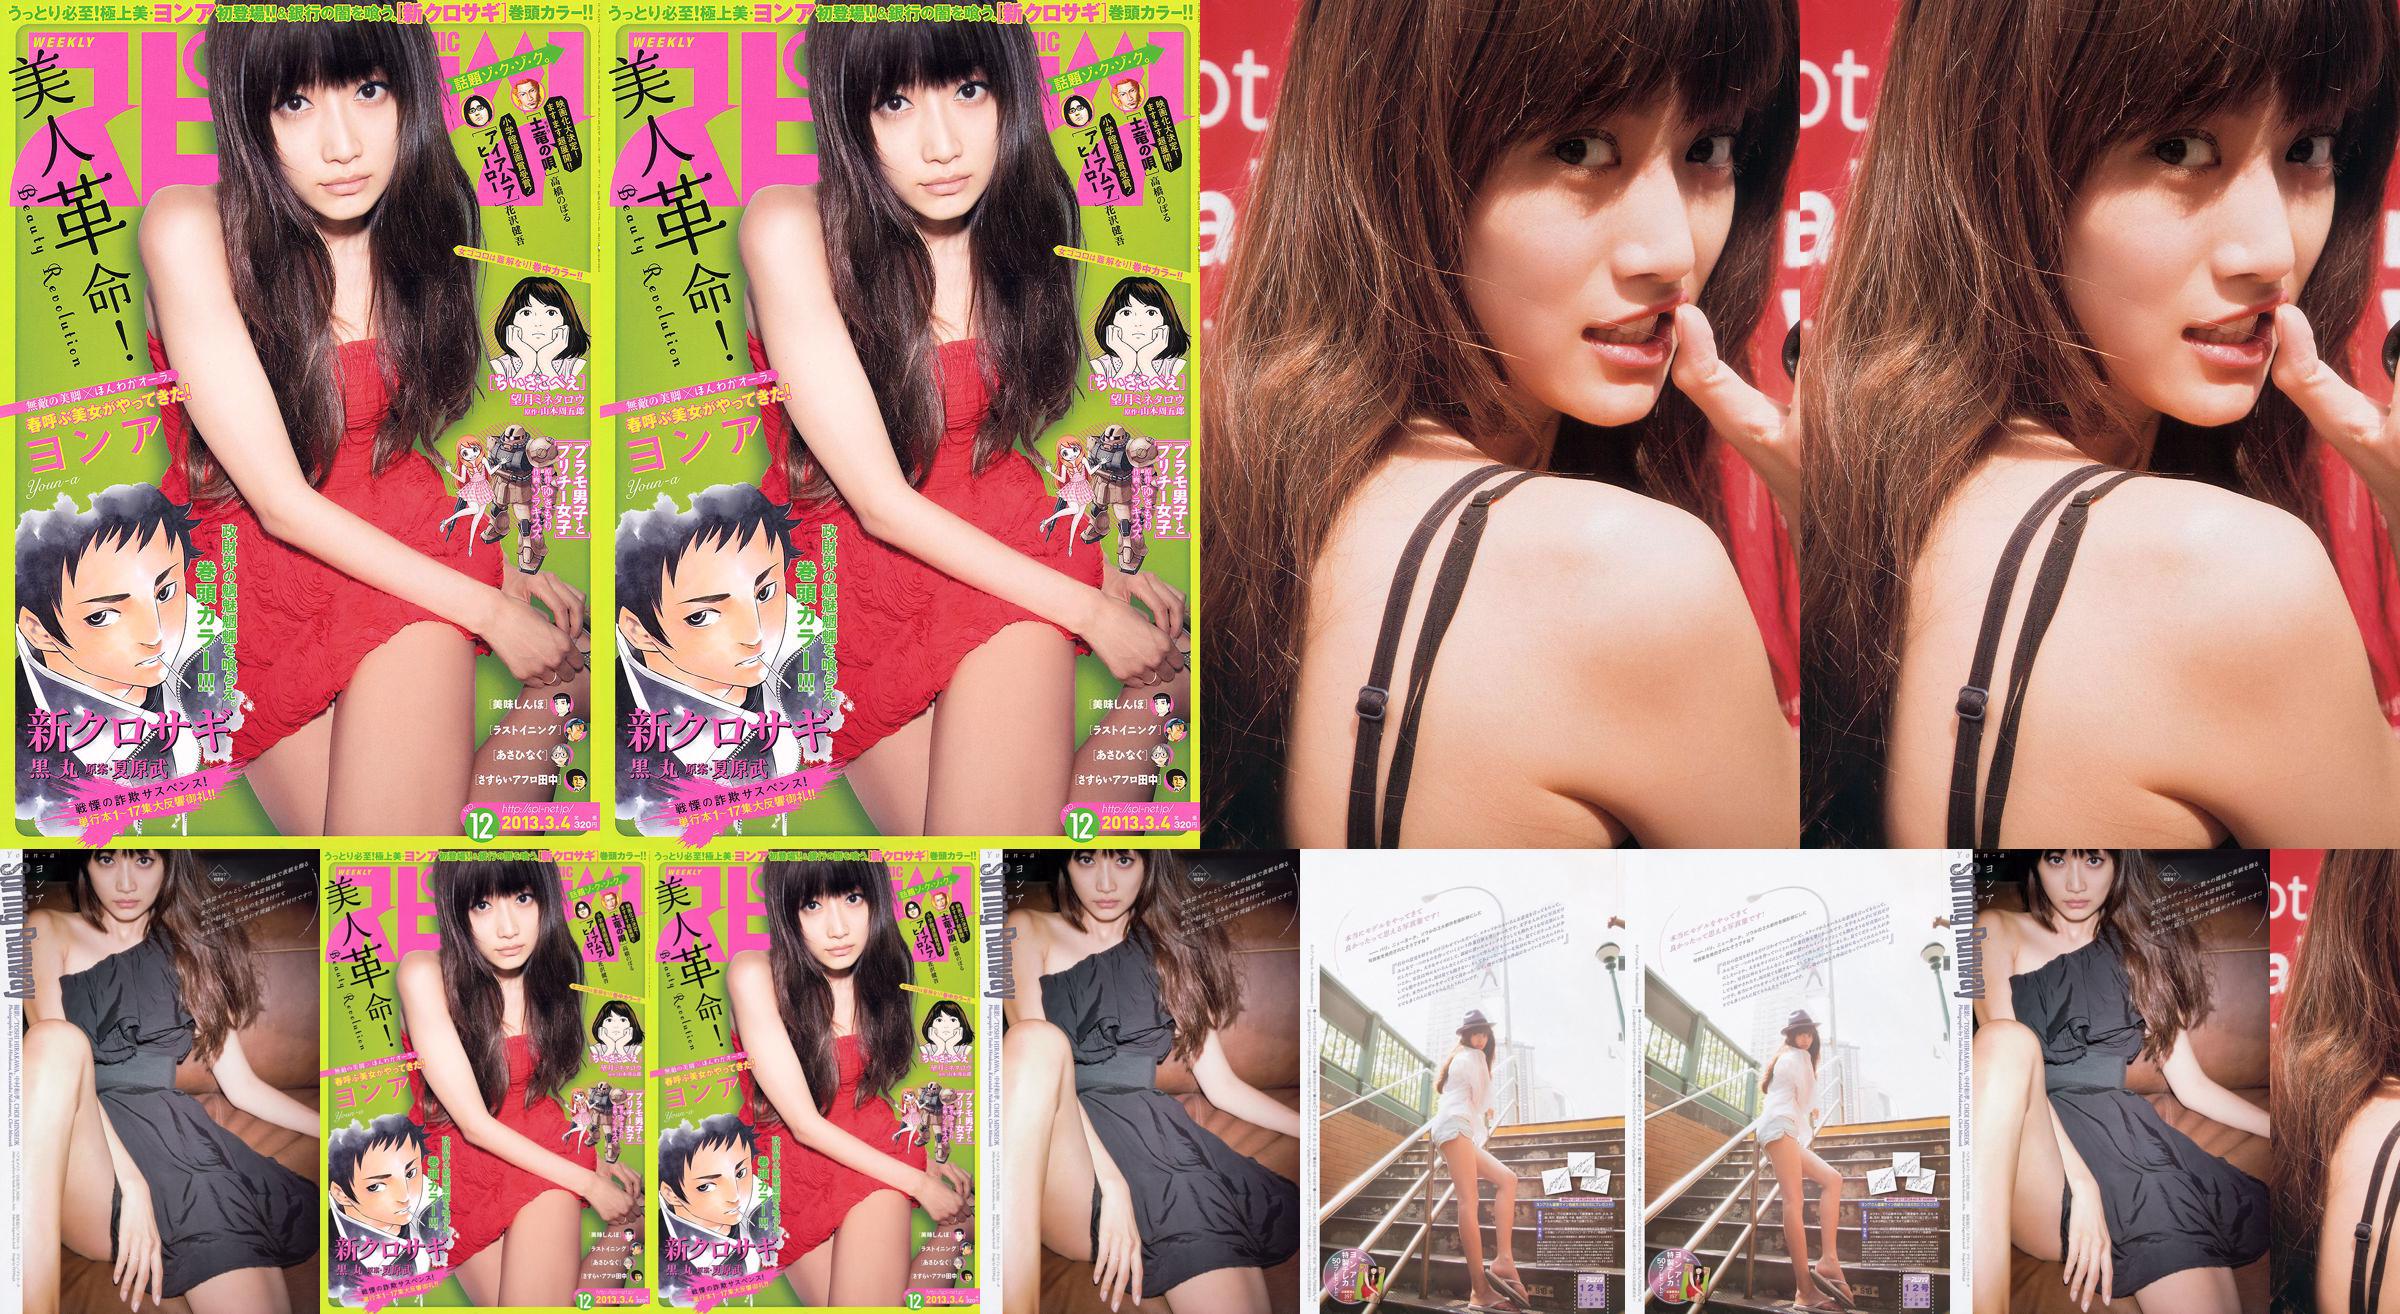 [Wöchentliche Big Comic Spirits] No. ン No. 2013 No.12 Photo Magazine No.5f1711 Seite 1